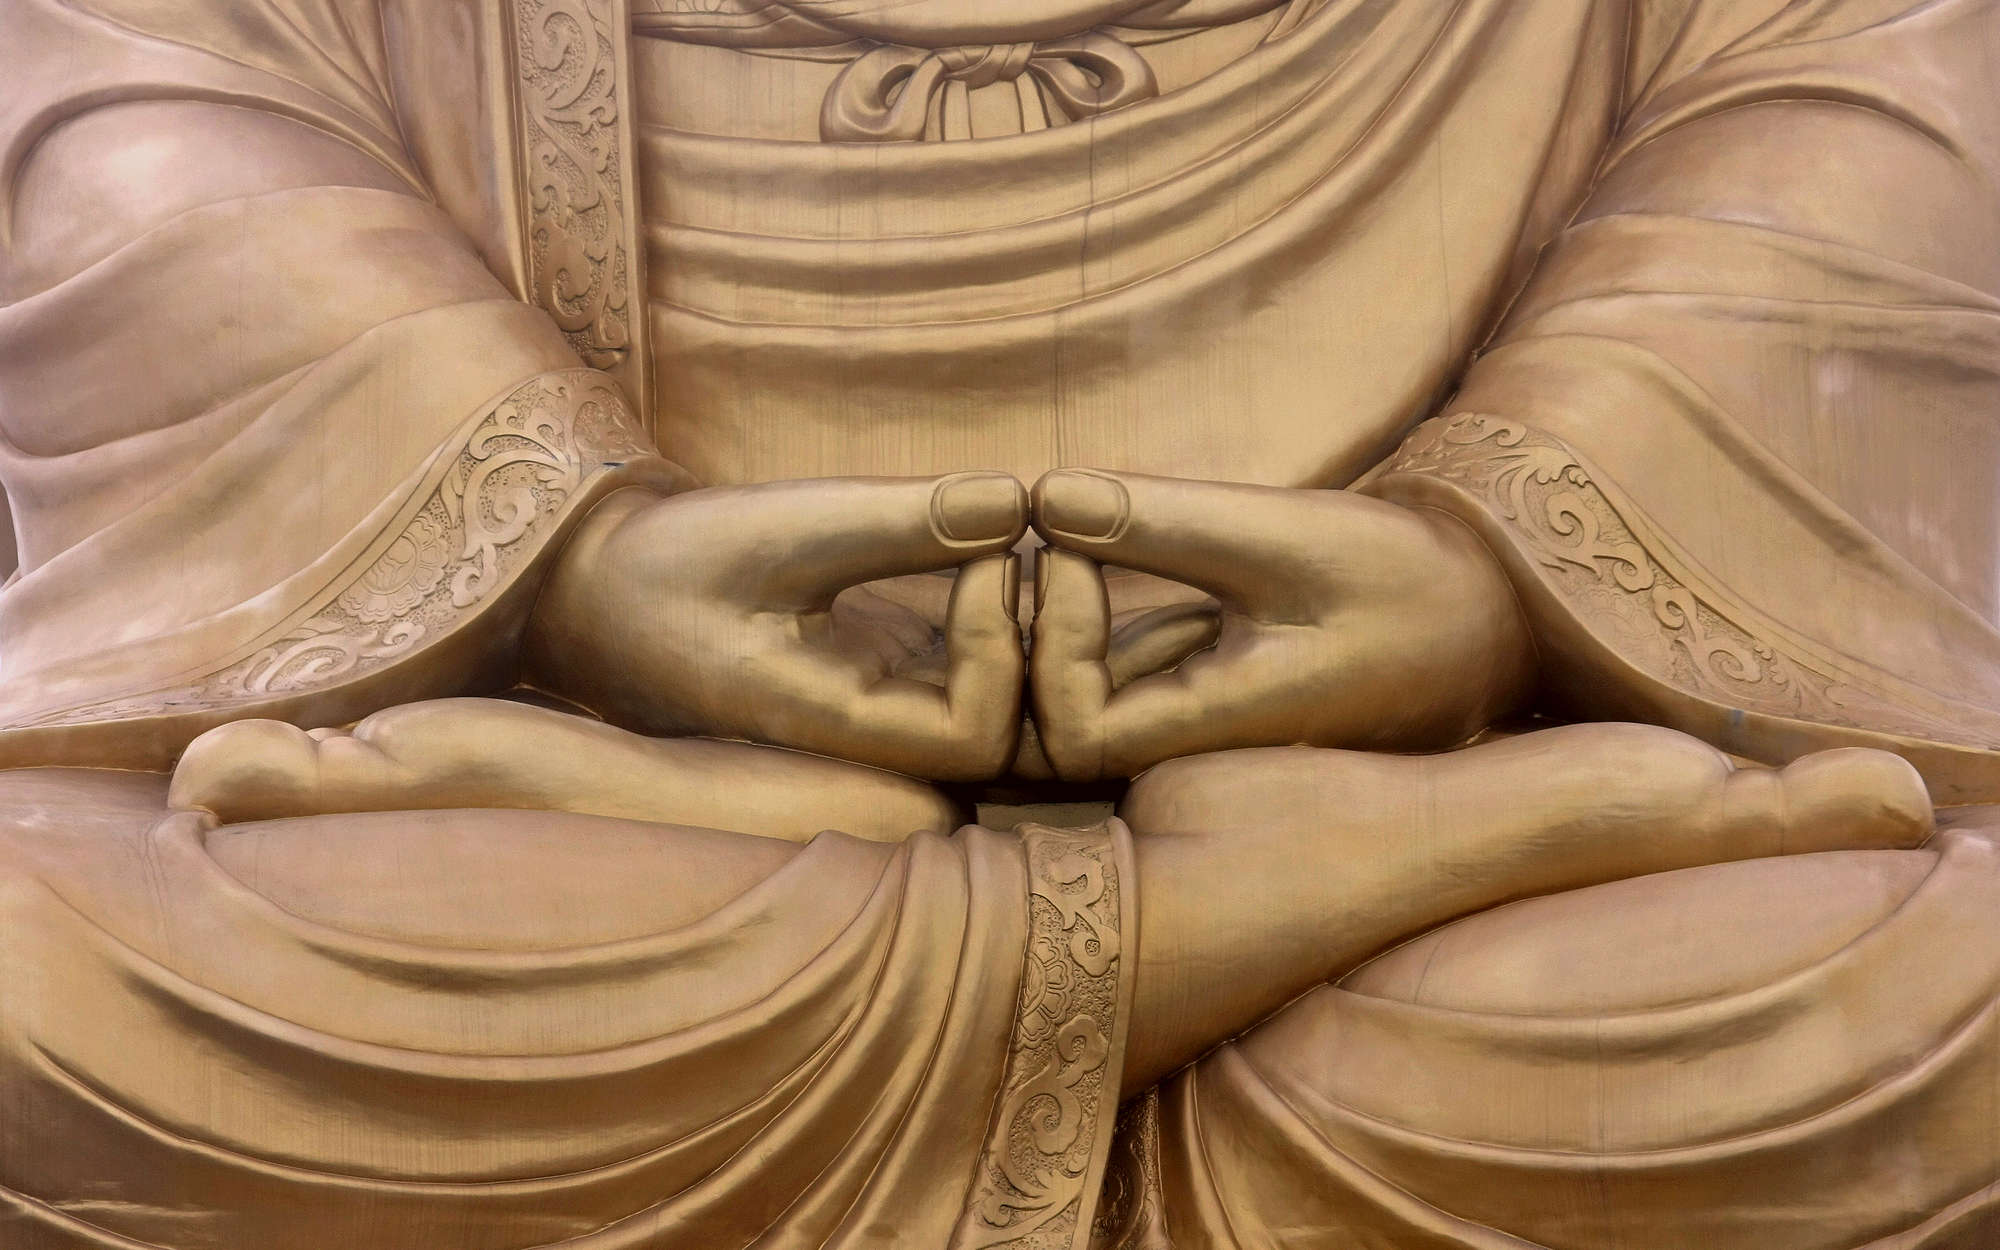             Fotomurali Religione Statua di Buddha - Materiali non tessuto testurizzato
        